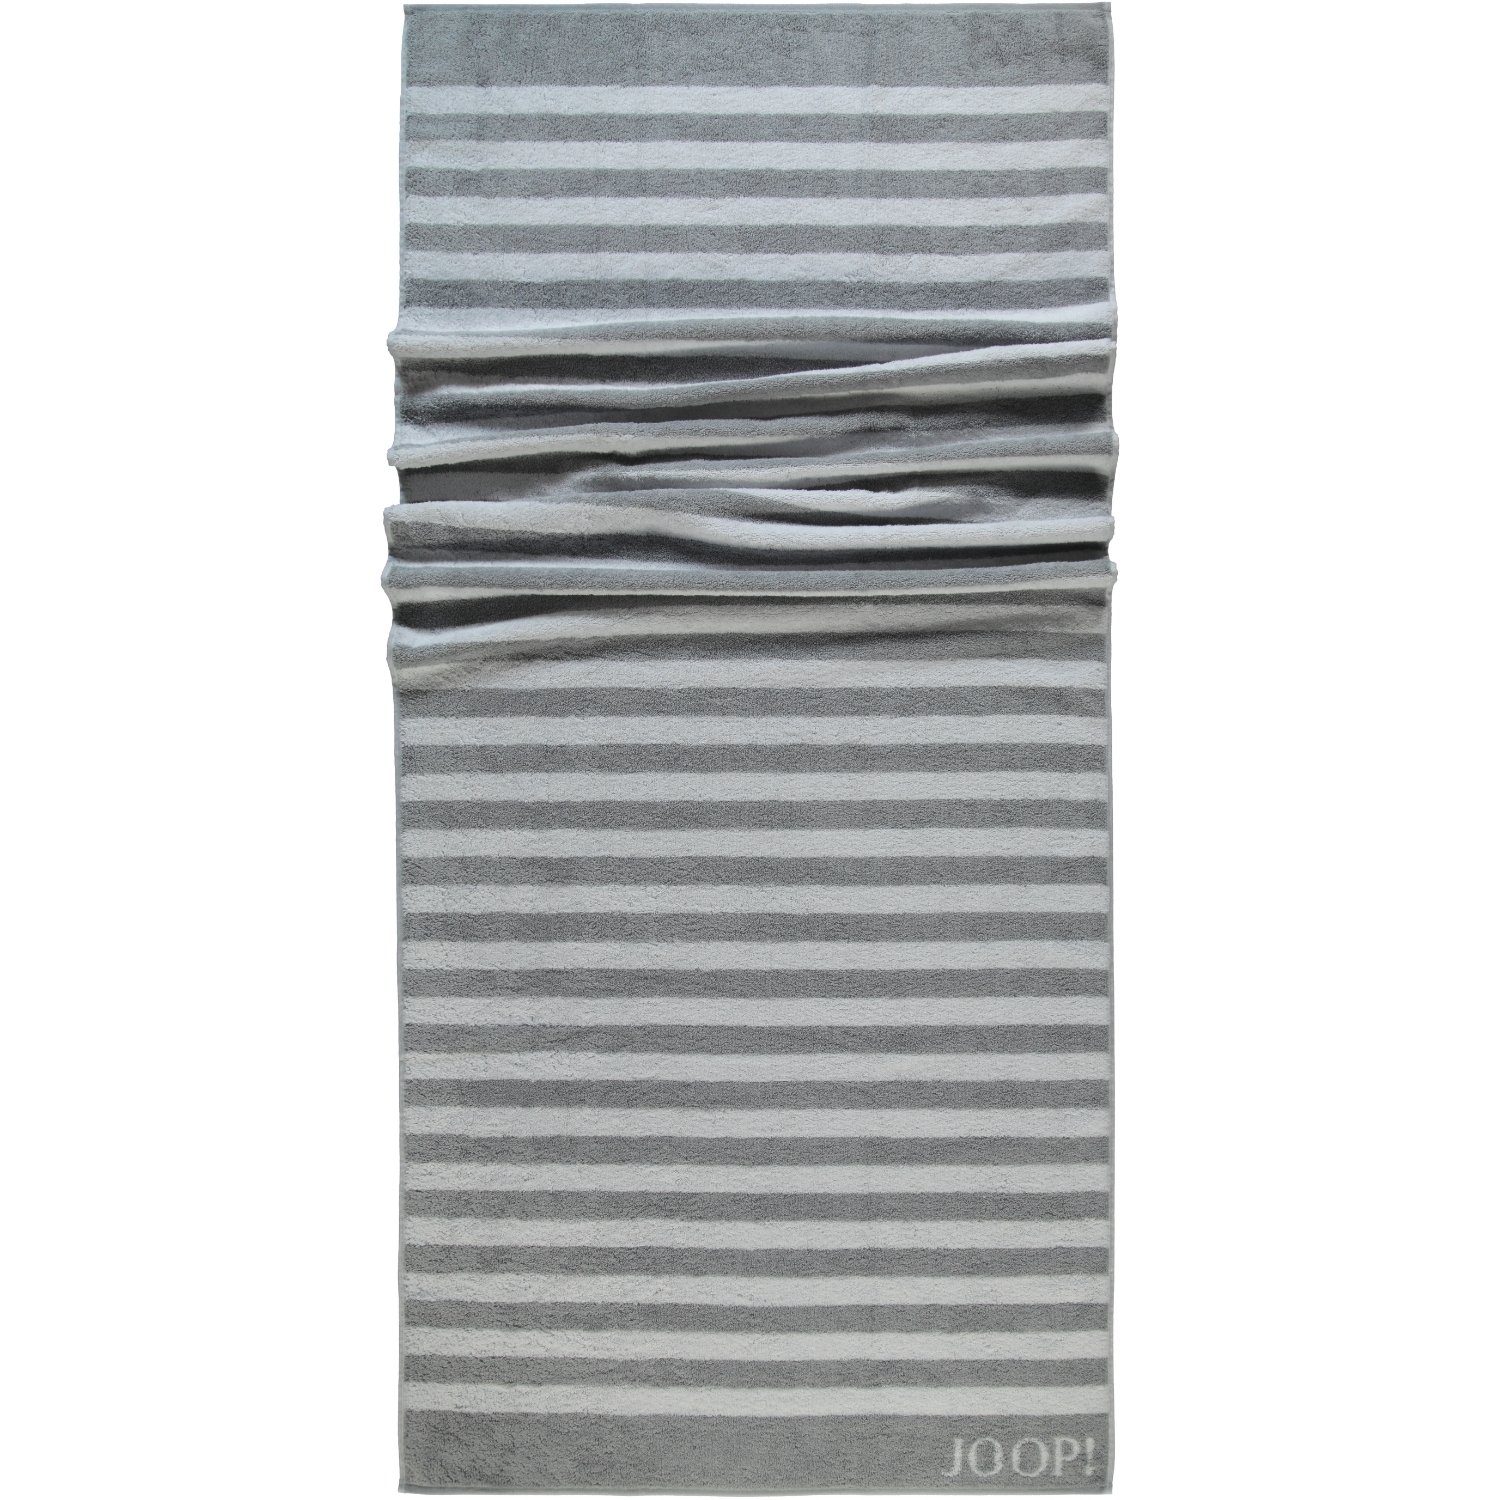 Baumwolle Classic Handtücher (76) 100% Joop! Silber Stripes 1610,